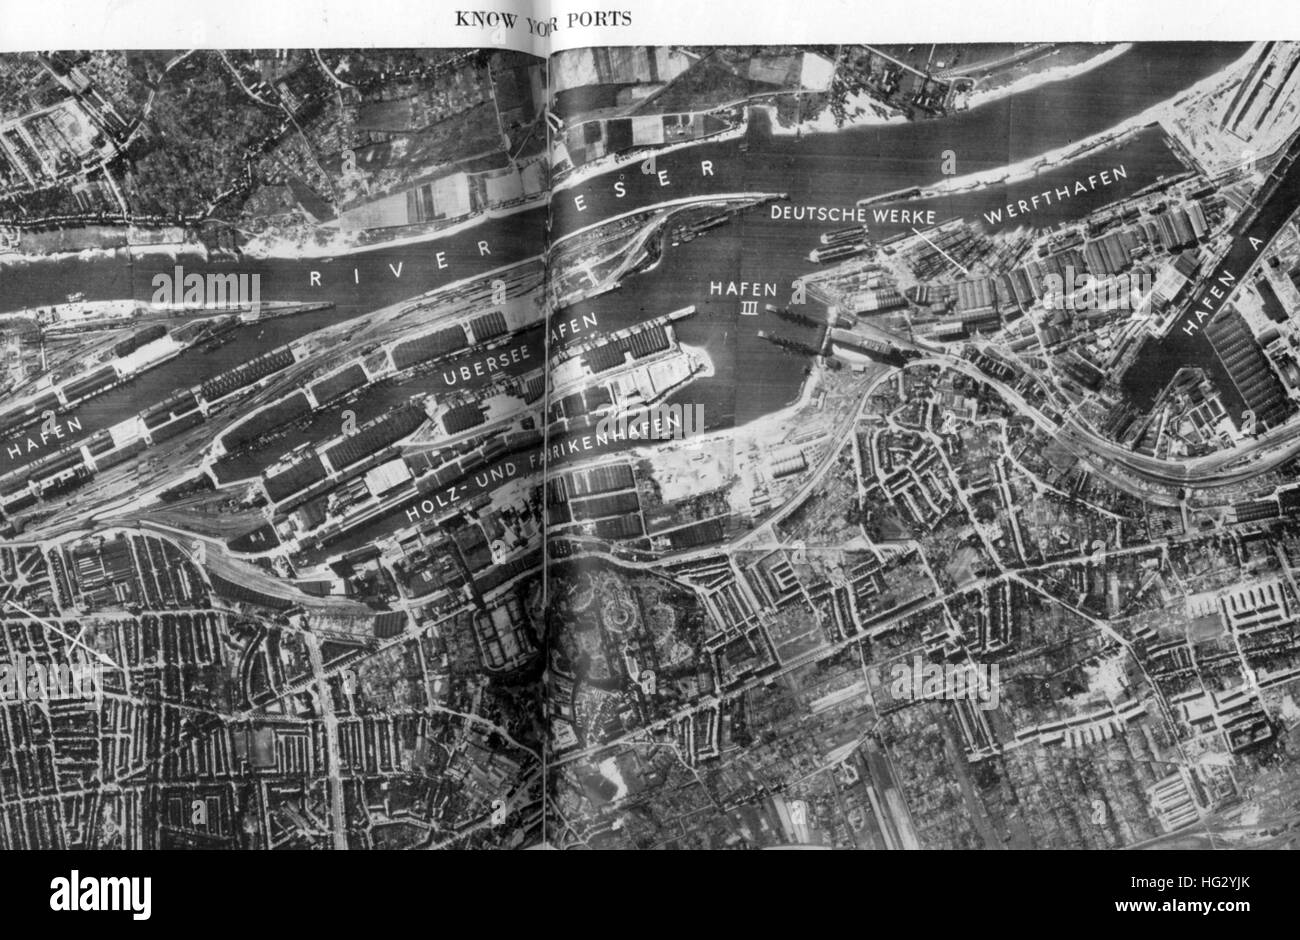 BREMEN, Allemagne, septembre 1942. La reconnaissance aérienne photo de la zone portuaire le long de la rivière Eser publié dans Témoignages à huis clos dans le cadre d'une série de savoir vos ports. Banque D'Images